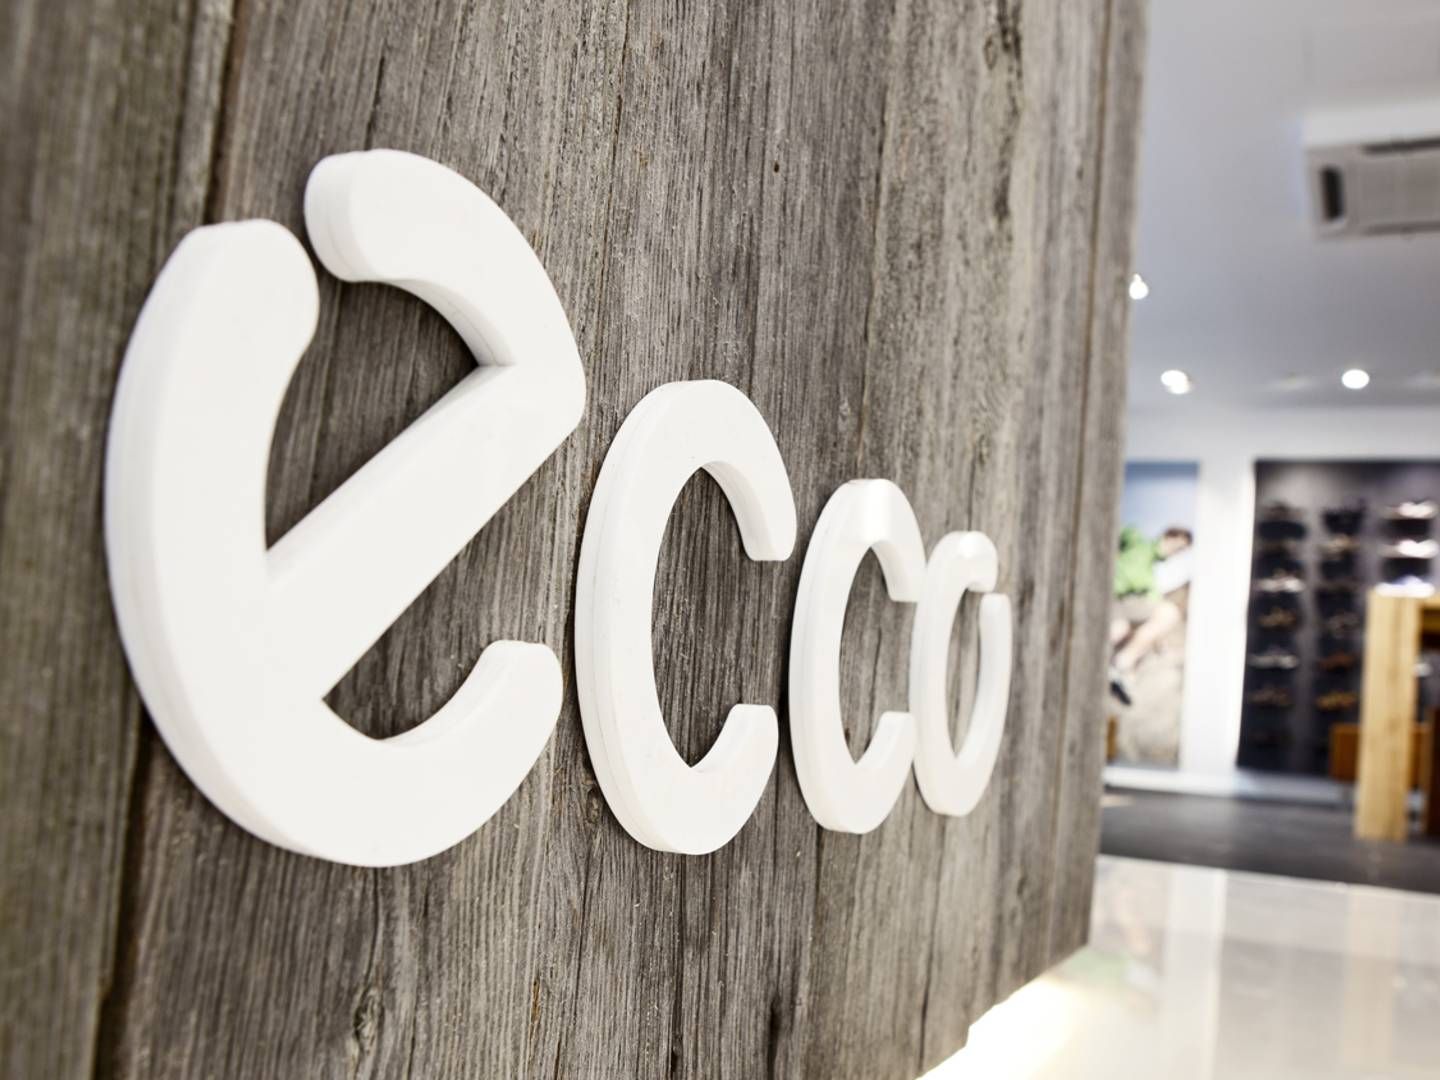 Ecco har fået heftig kritik for modsat de fleste andre vestlige virksomheder at forblive i Rusland, der i øjeblikket stadig fører en ekspansiv angrebskrig mod Ukraine og bevidst går efter civile mål. | Foto: PR / Ecco